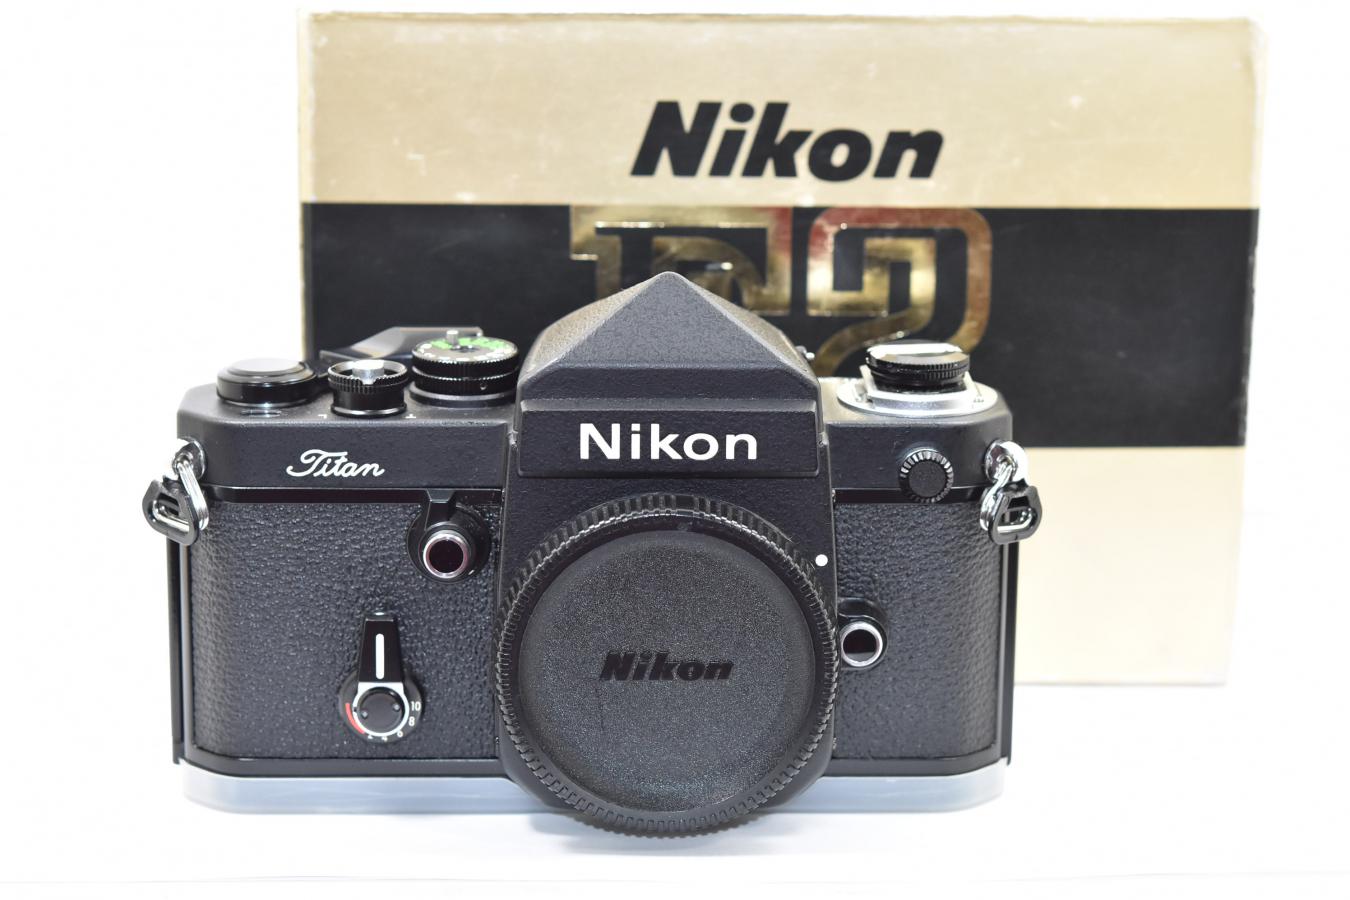 ニコン コレクション向け Nikon F2チタン ネーム入り 元箱付一式 フィルム1本も通していない カメラのヤマゲン カメラファン 中古カメラ レンズ検索サイト 欲しい中古カメラが見つかる